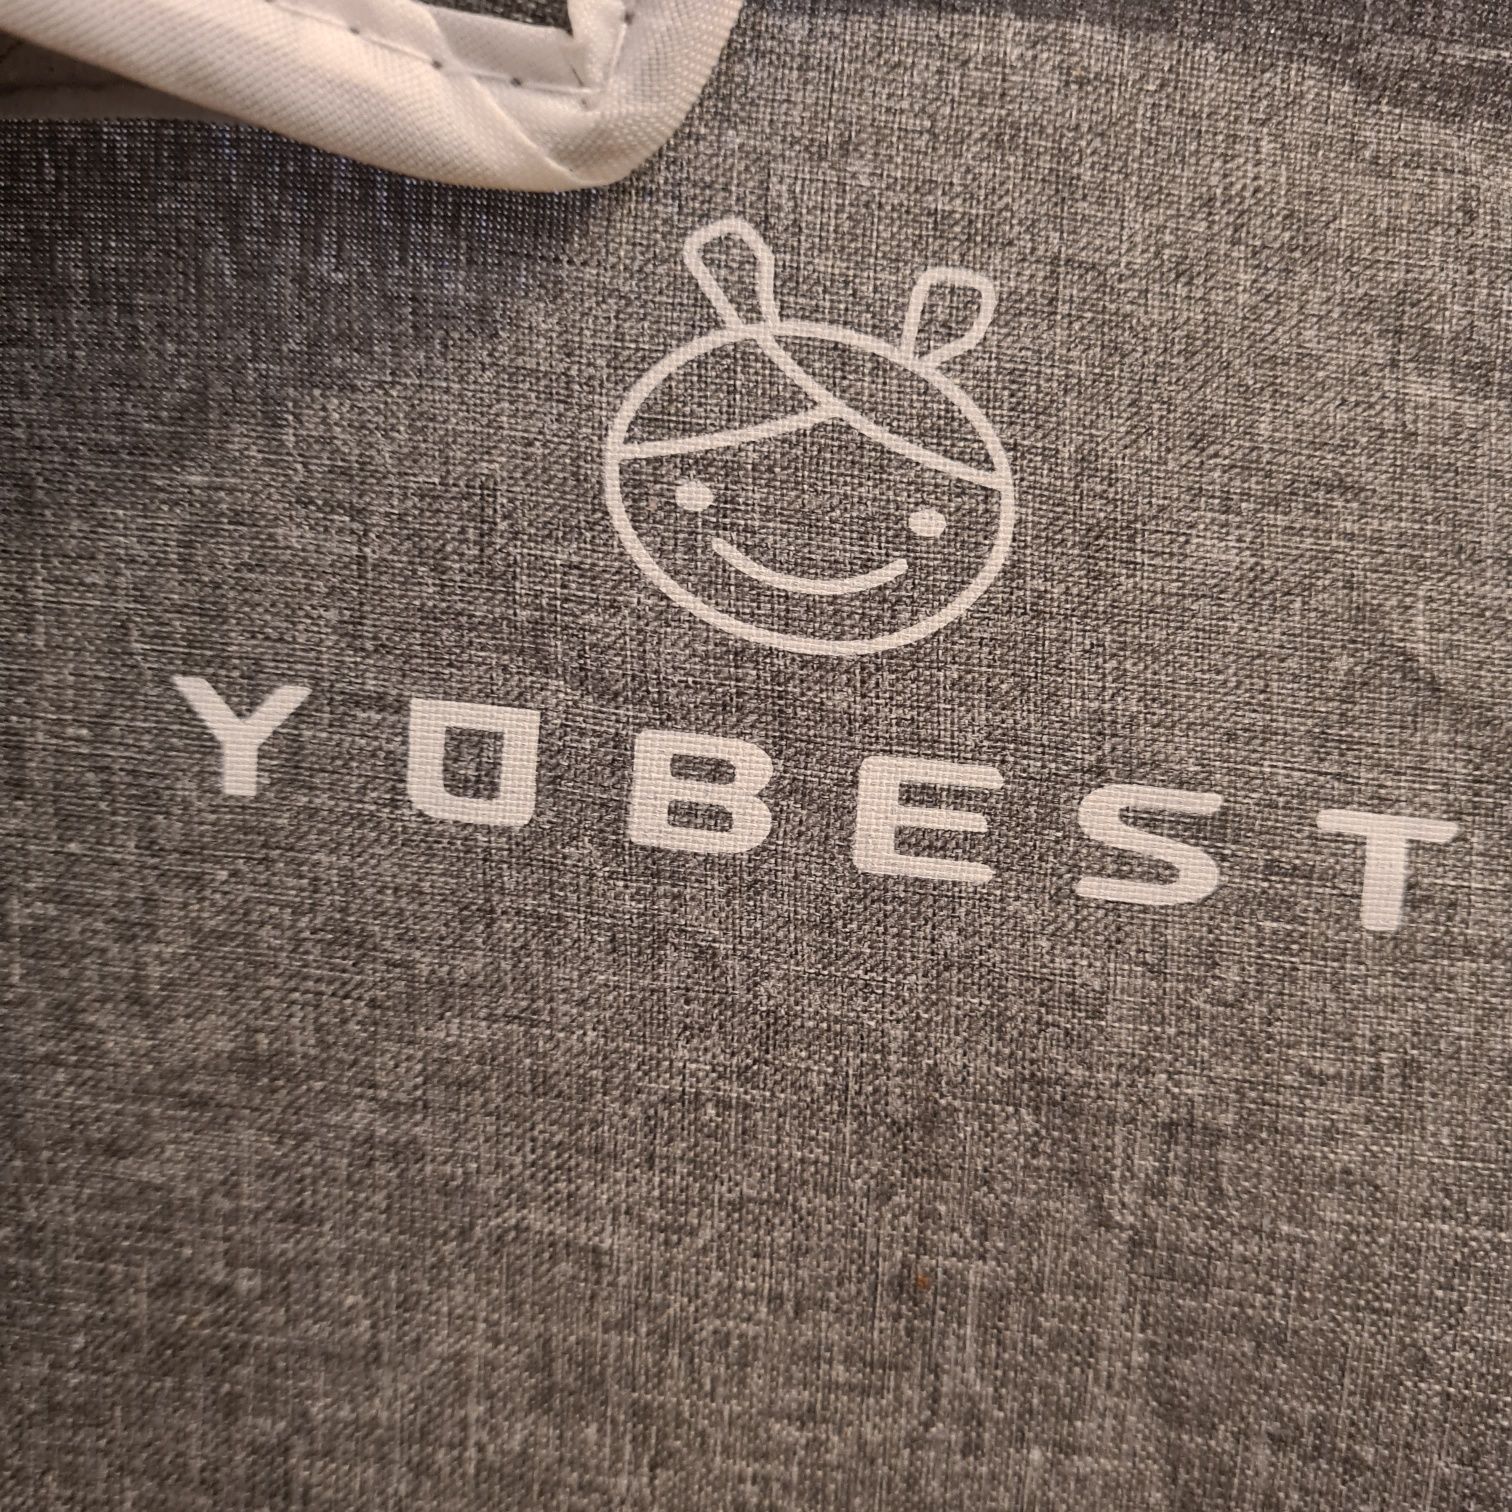 Kojec duży marki yobest